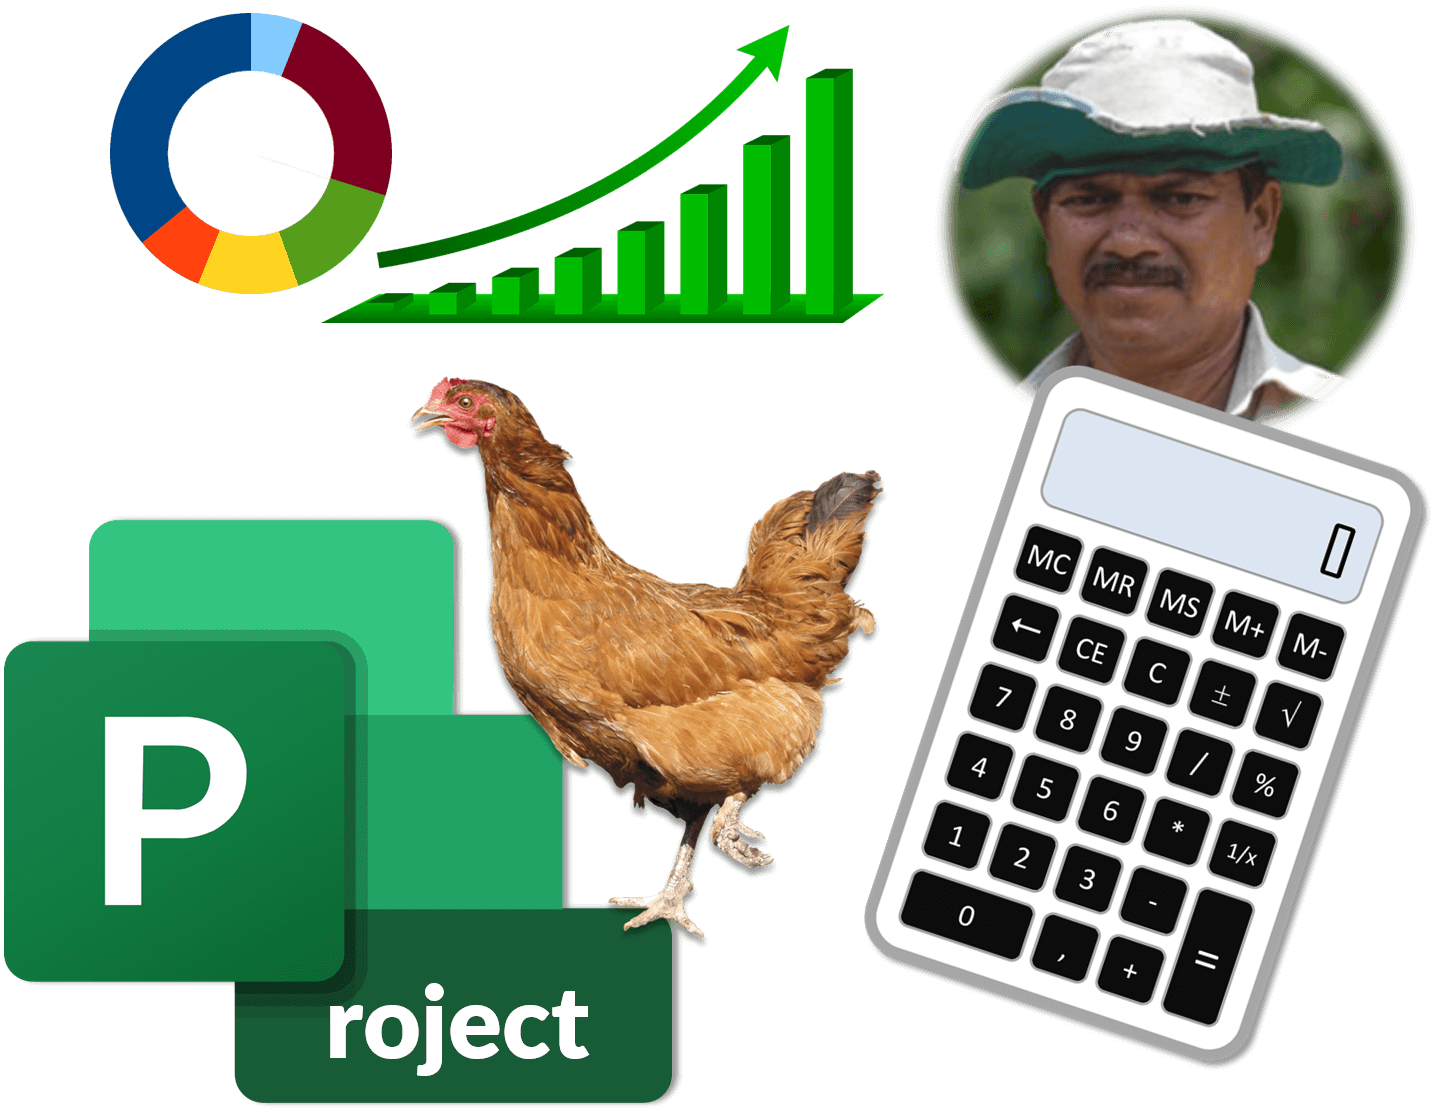 pdf on poultry farming business plan